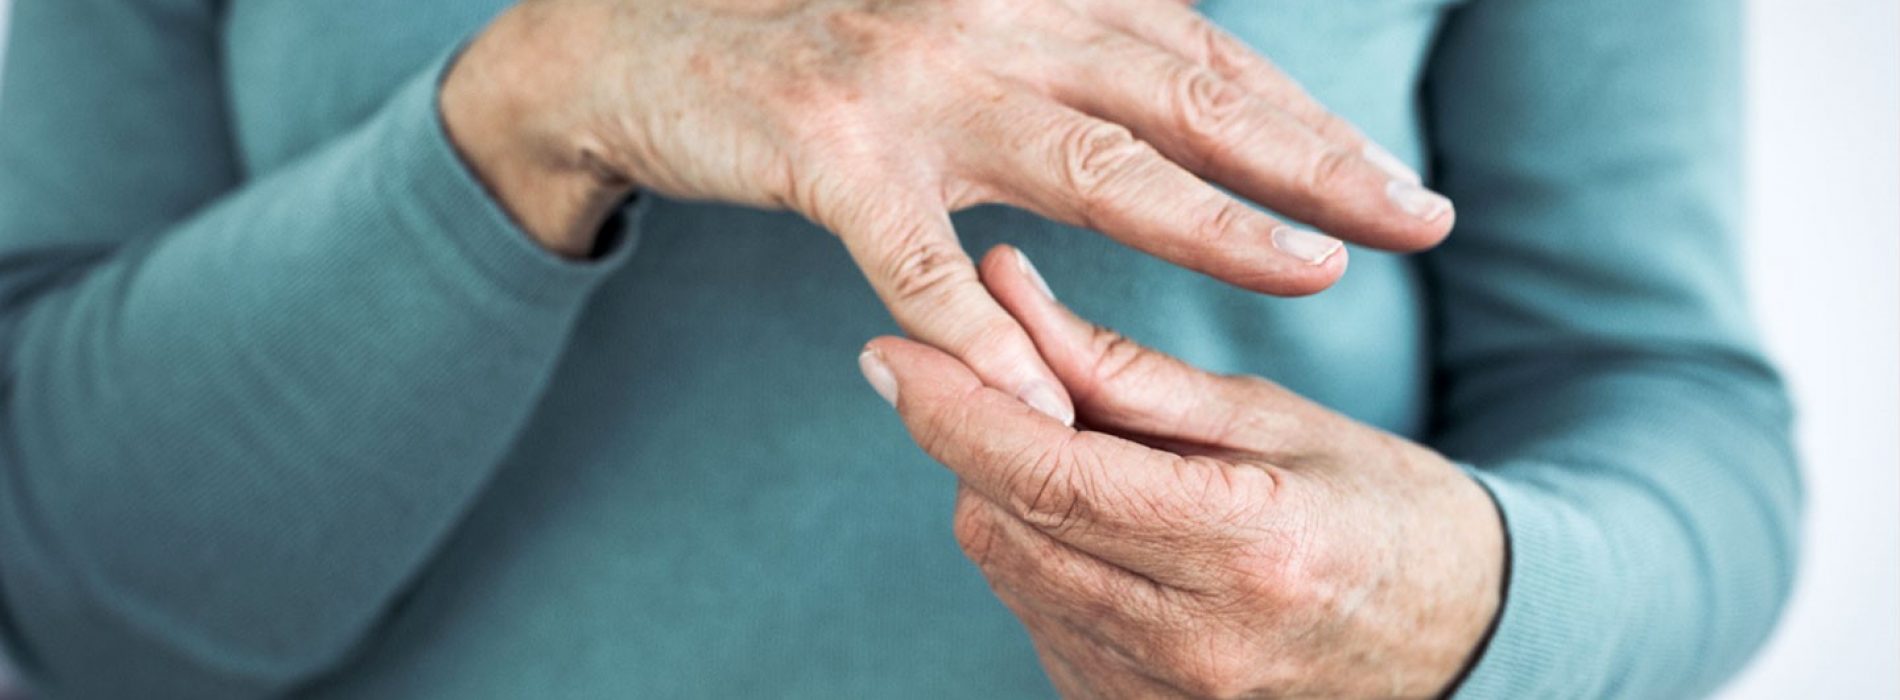 Natuurlijke remedies voor reumatoïde artritis